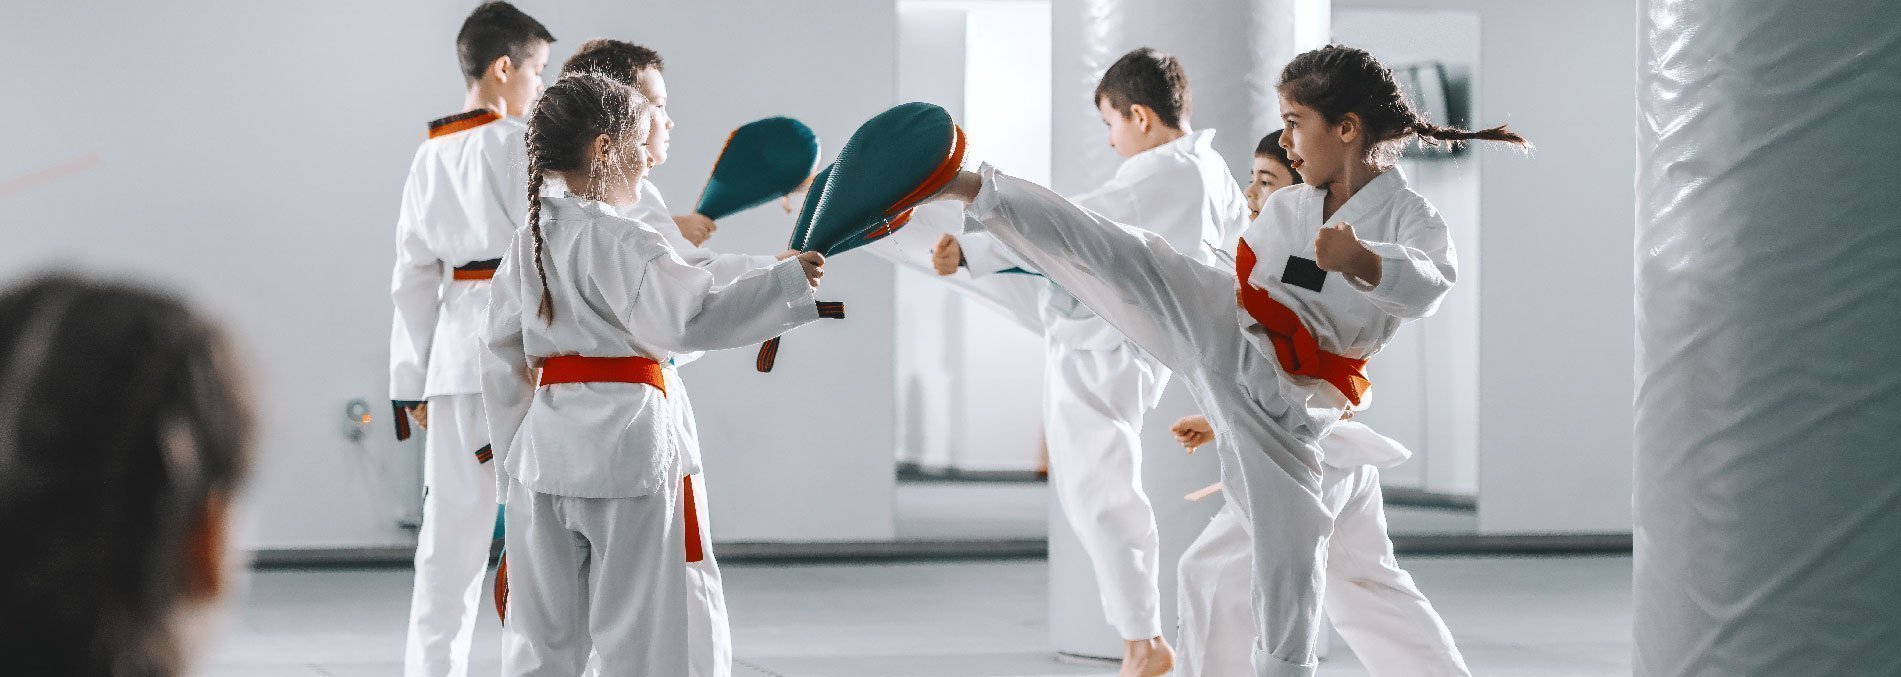 Club SER UPB Taekwondo